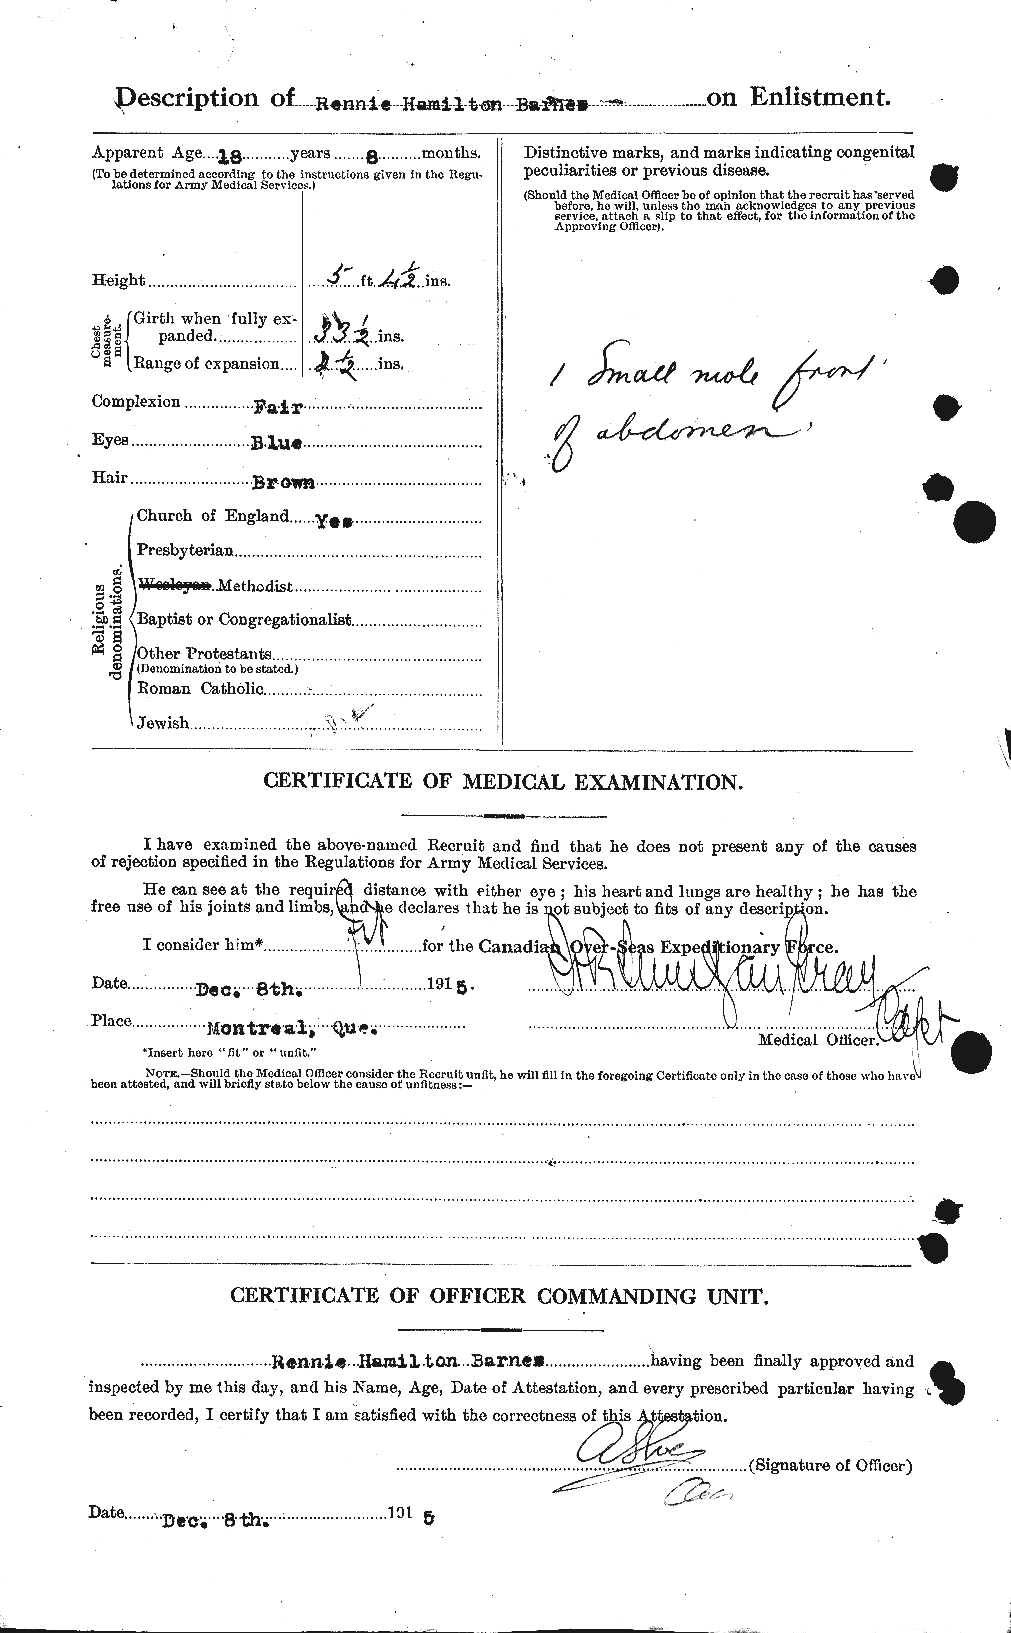 Dossiers du Personnel de la Première Guerre mondiale - CEC 227384b